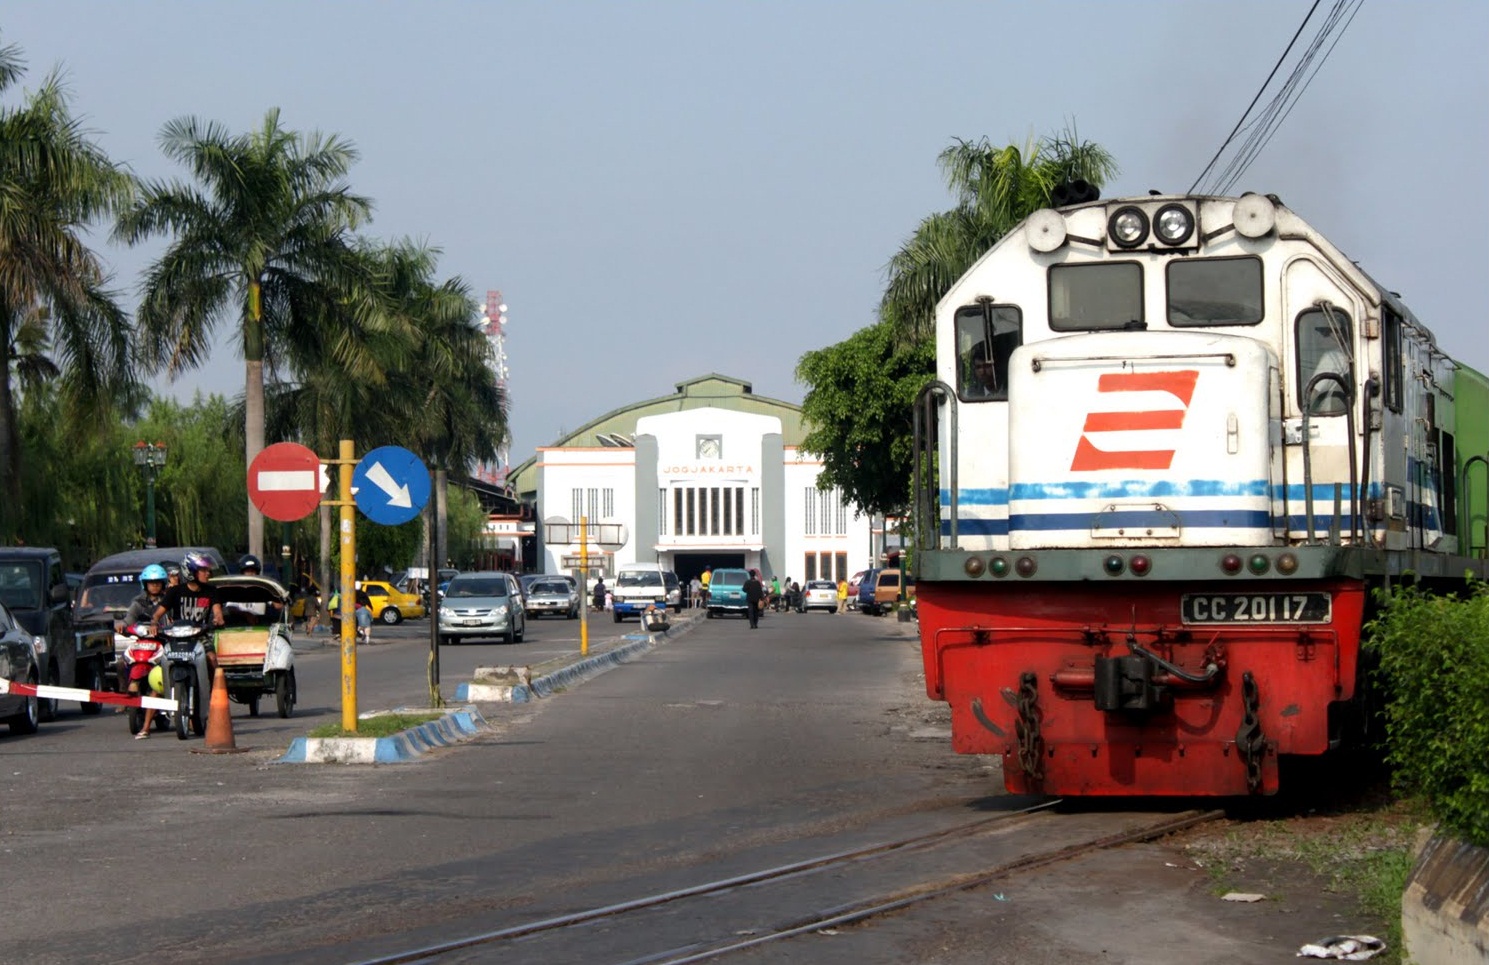 Jadwal Kereta Api di Yogyakarta, Beli Tiket Online dan Reservasi KA